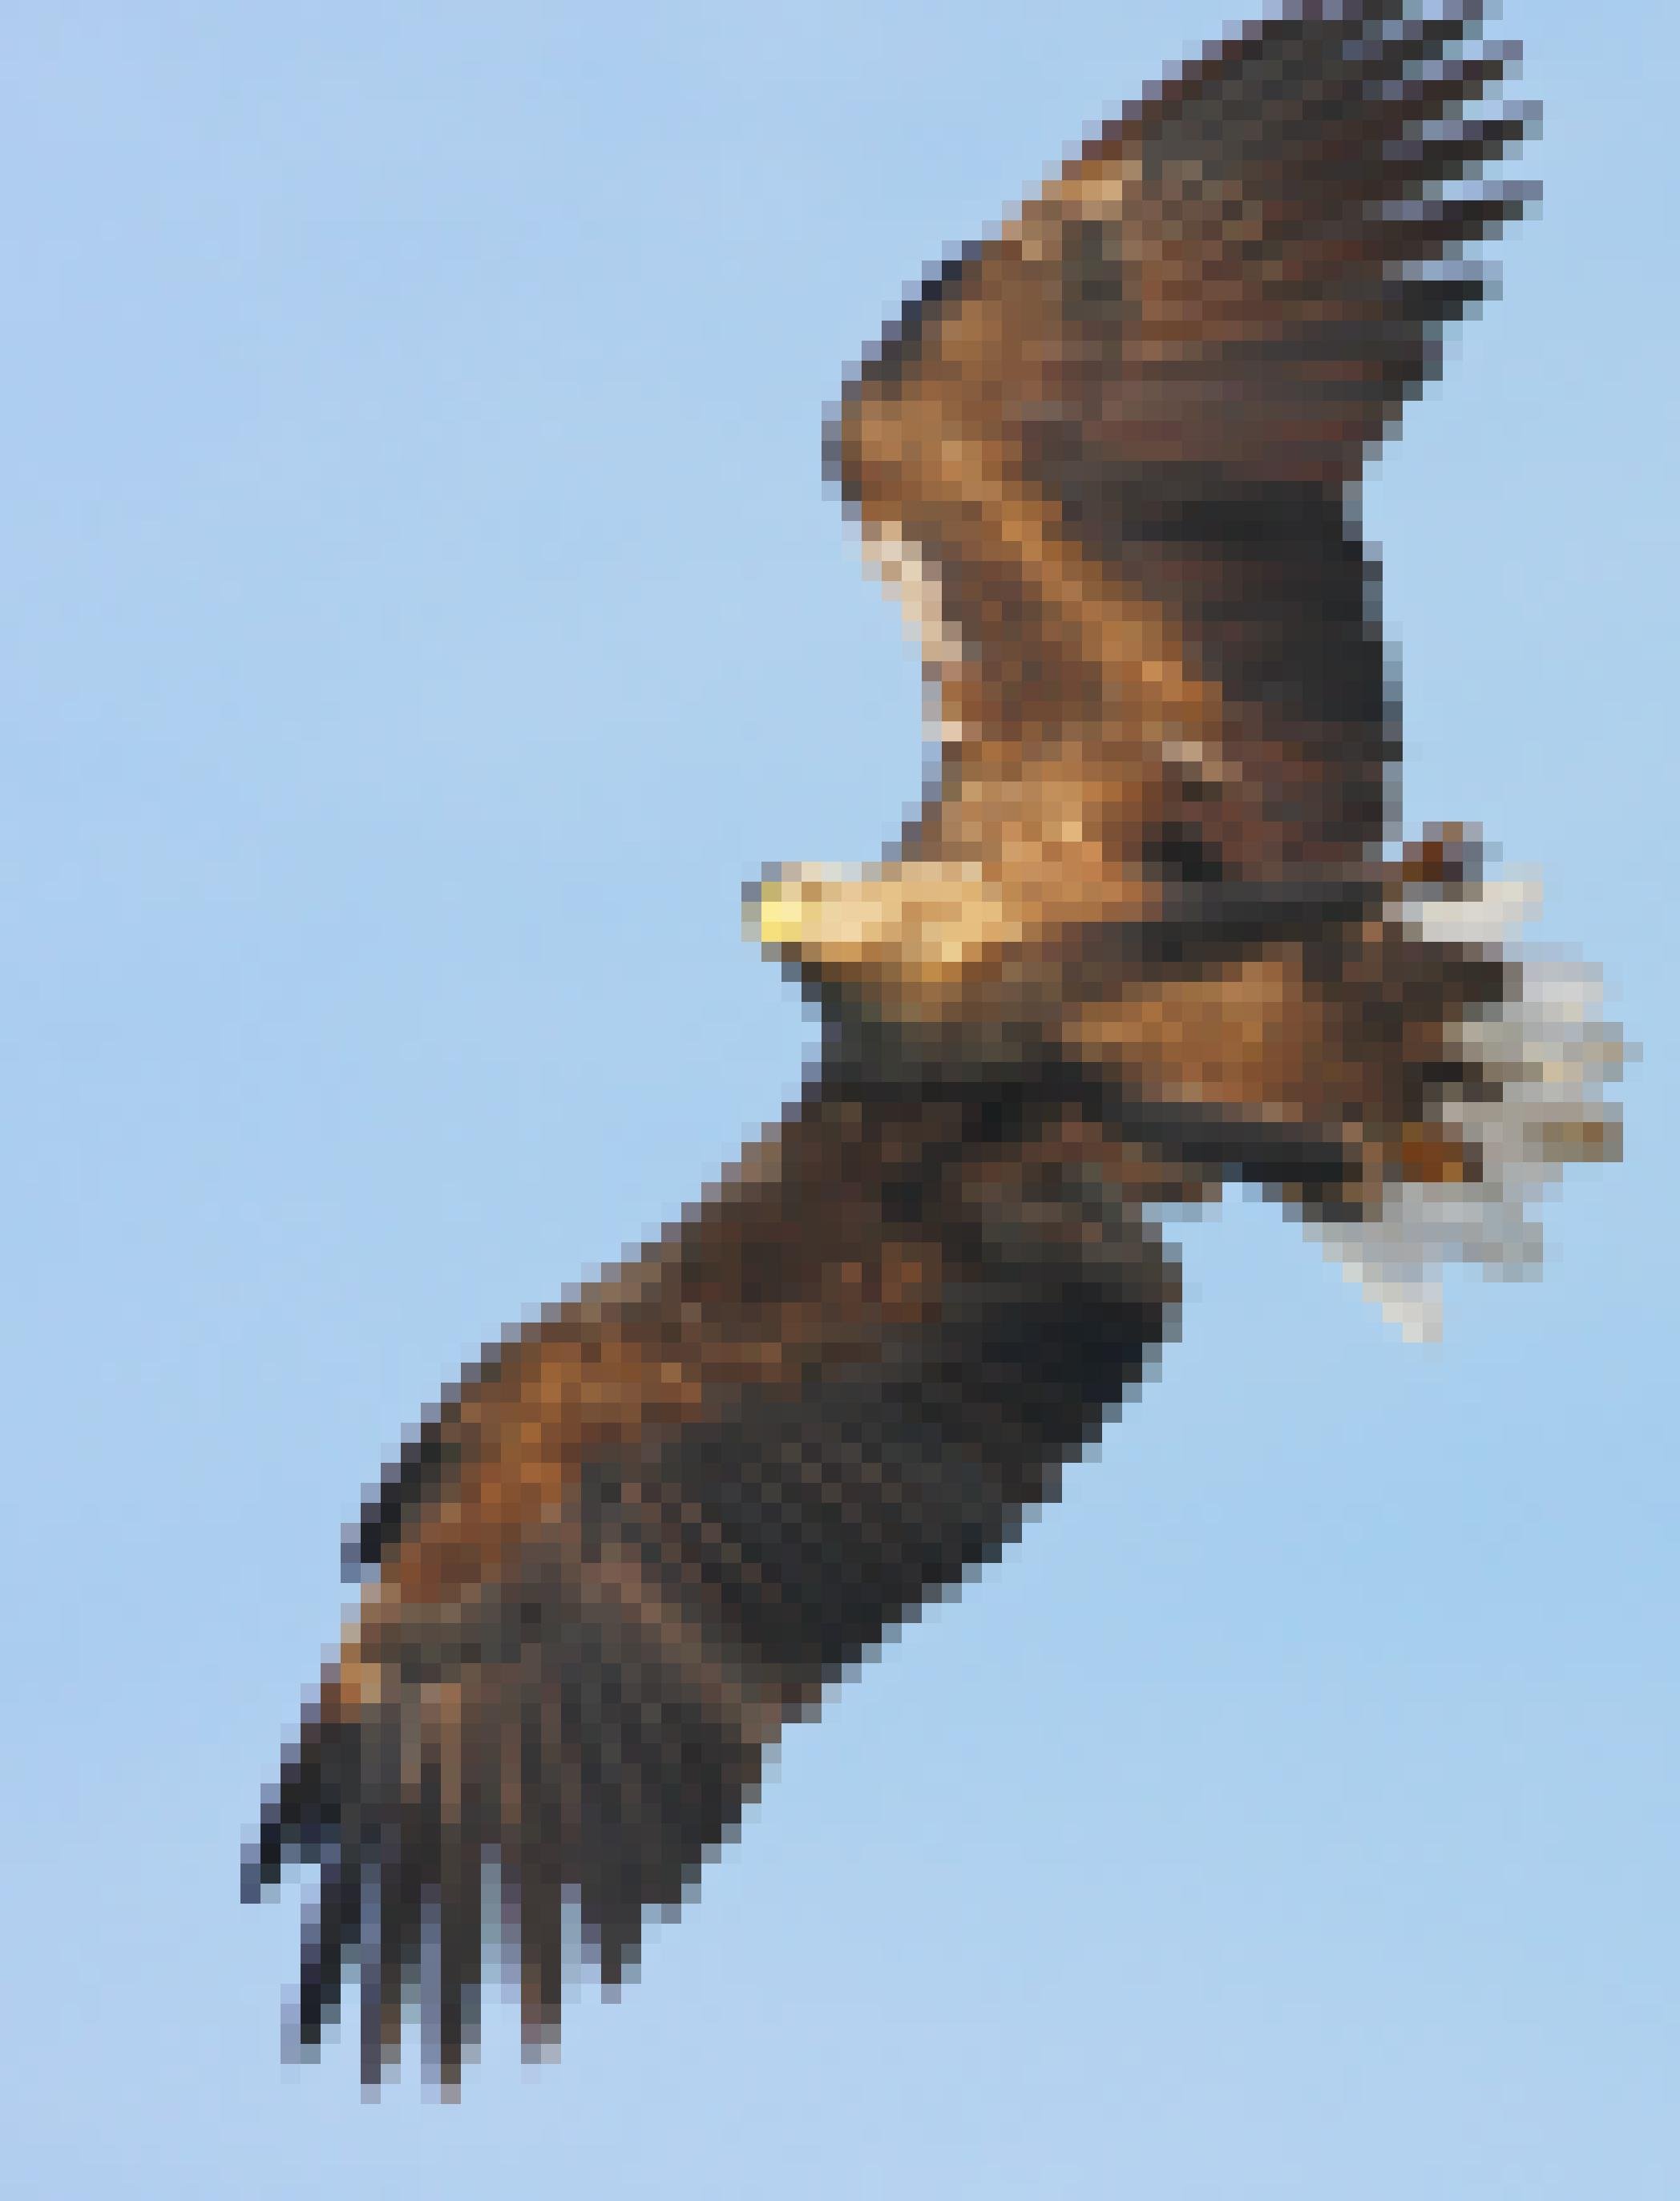 Ein Seeadler im Sturzflug auf den Betrachter, Nahaufnahme.